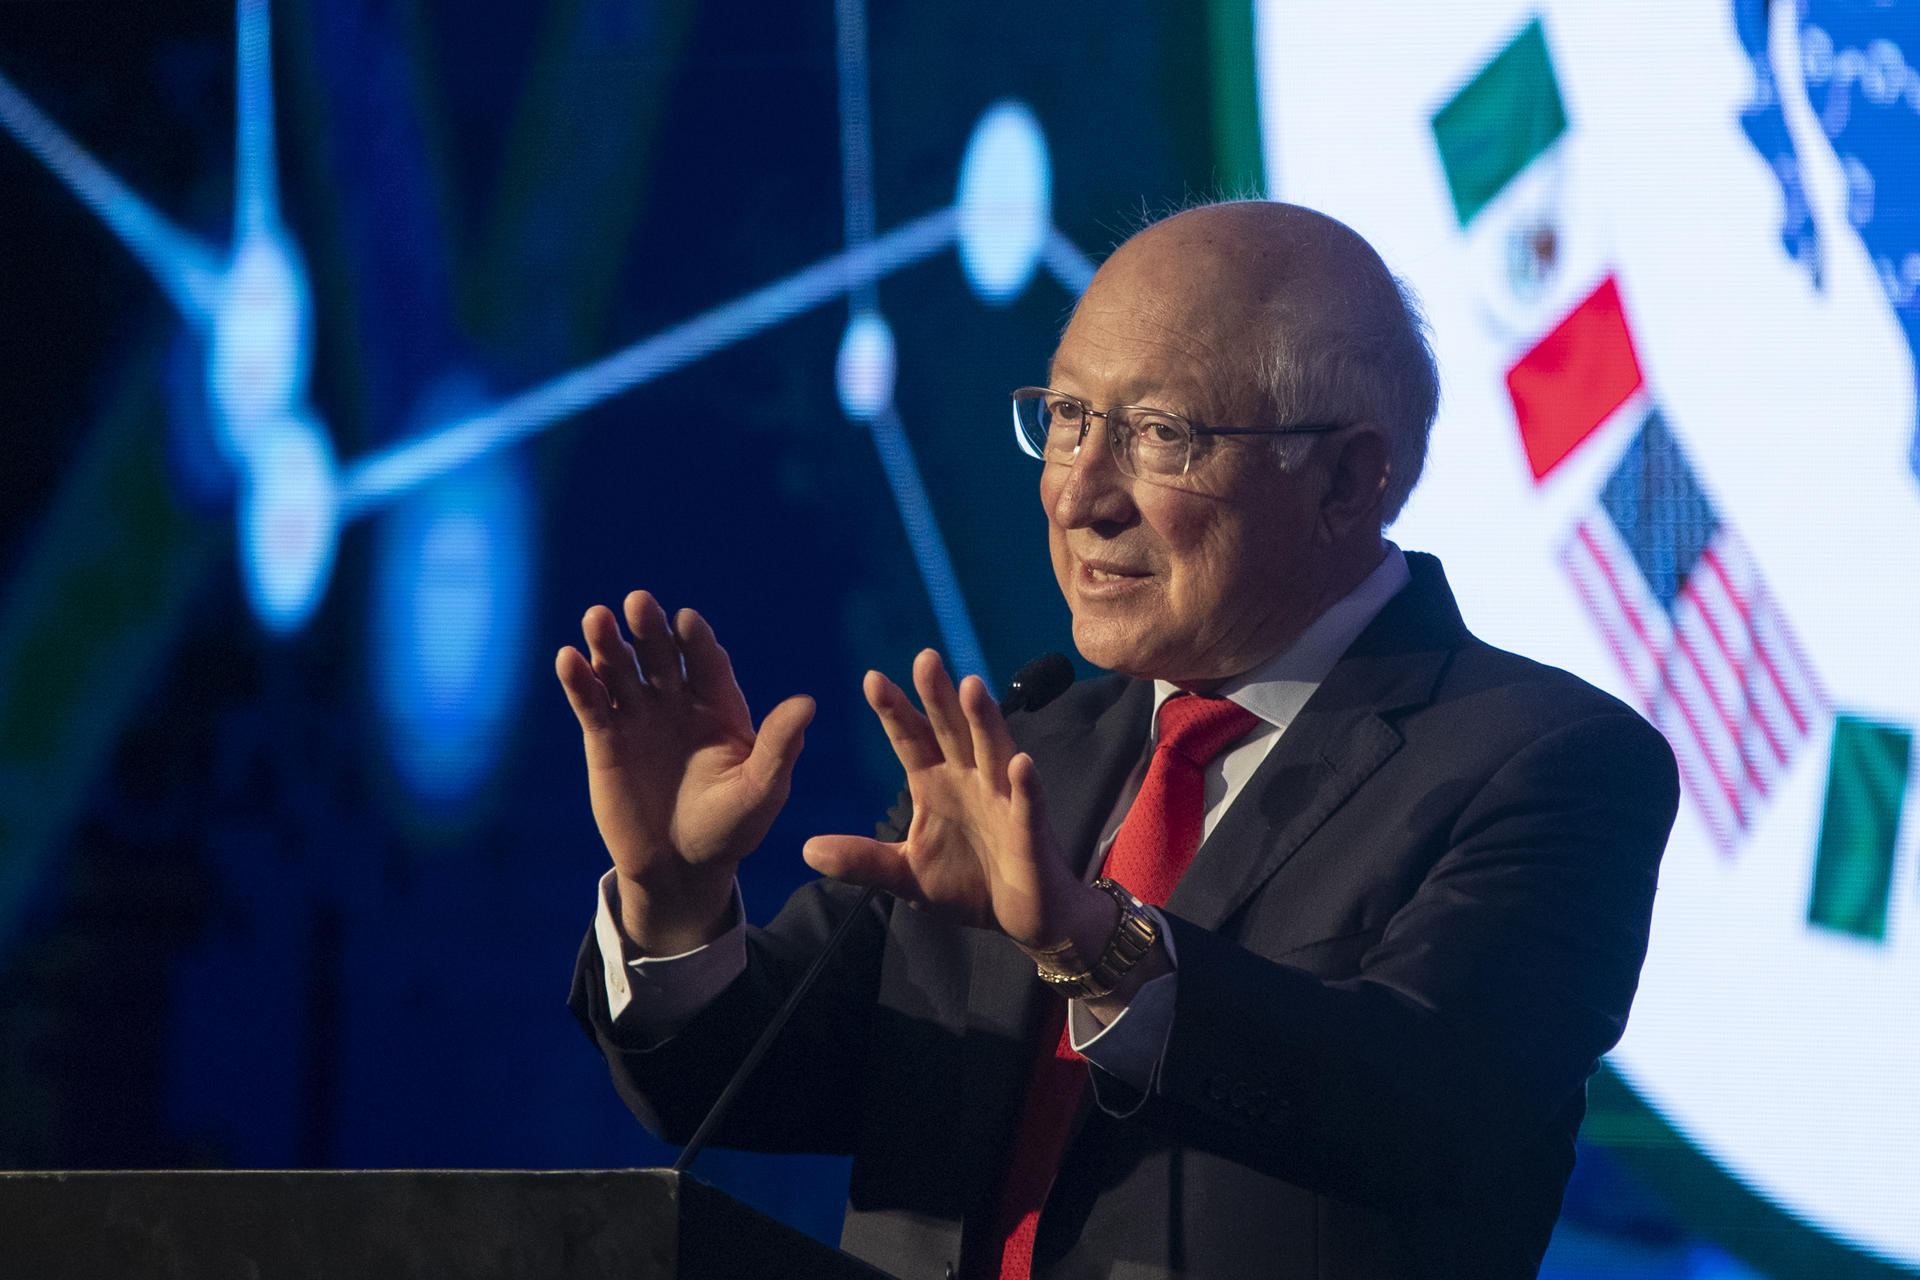 Embajador de EEUU pide a México luchar contra fentanilo como “socios y familia”